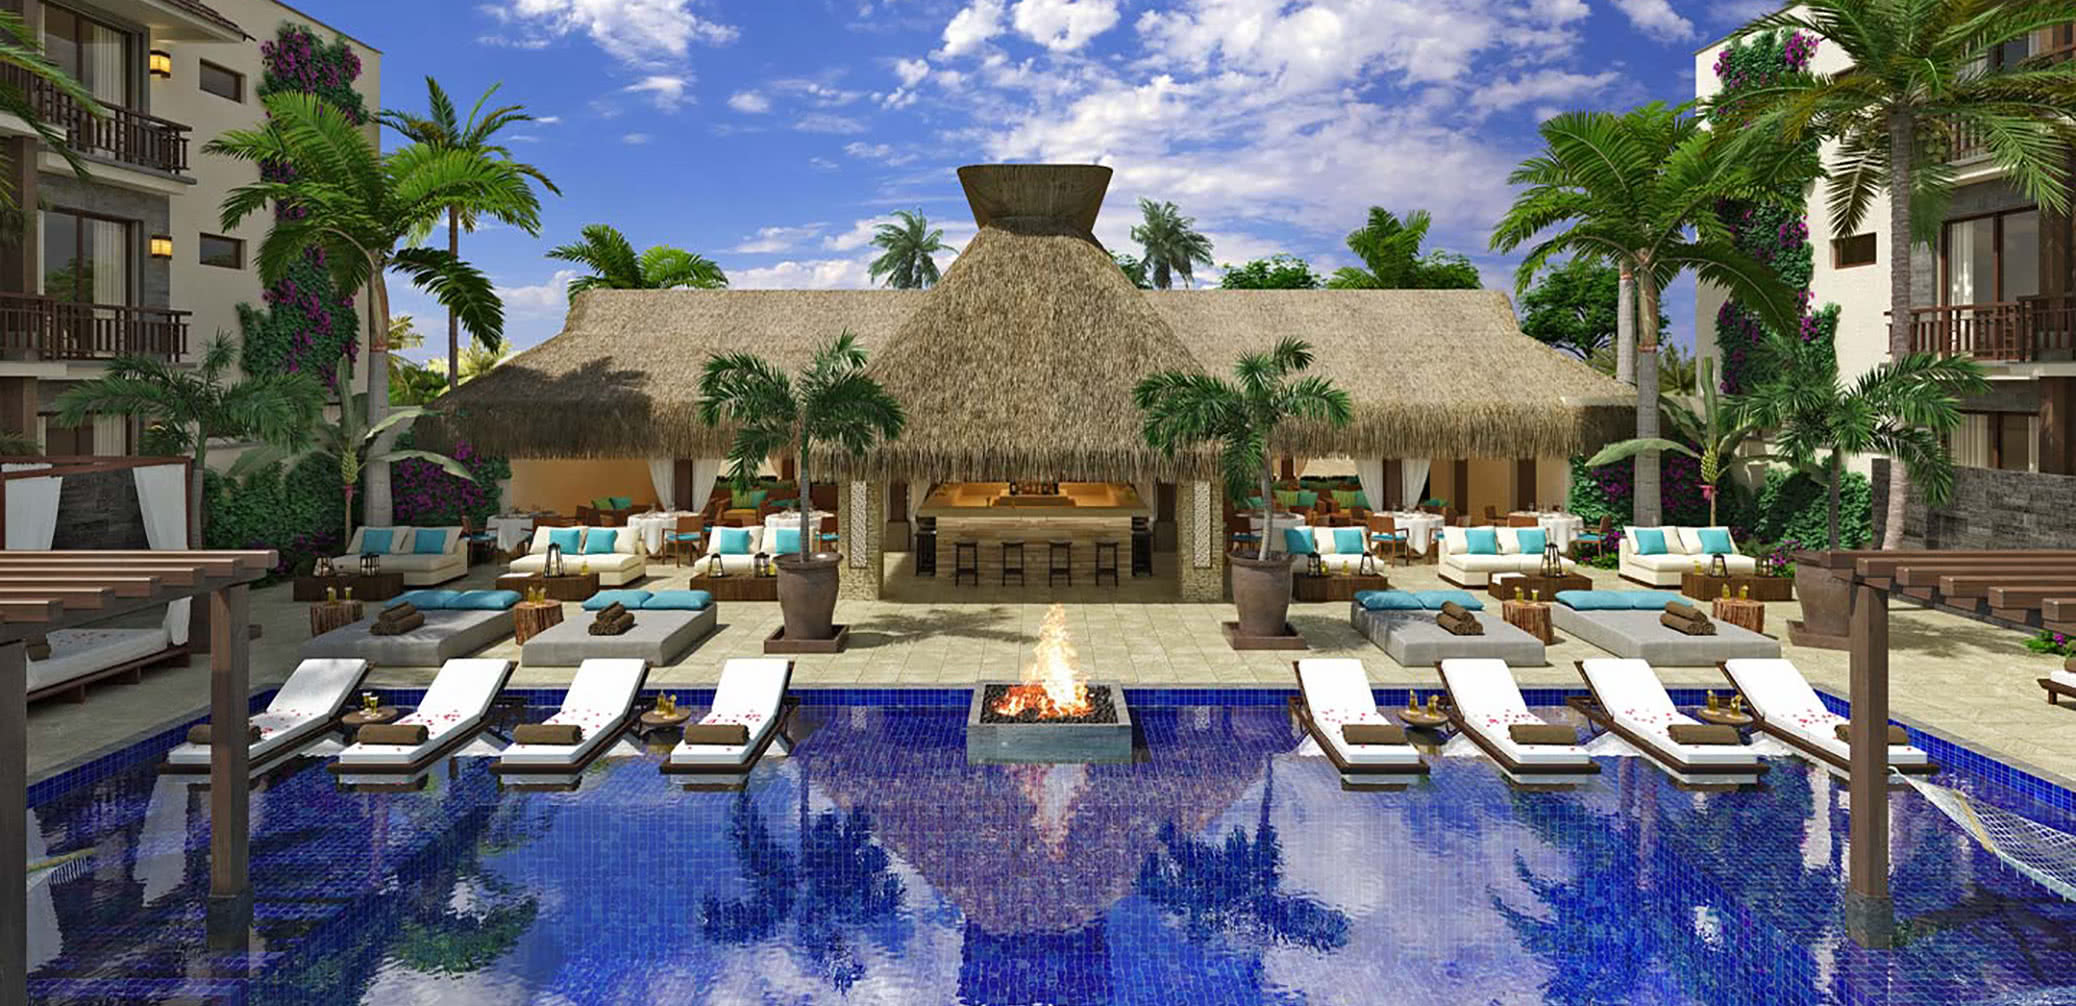 10 Best Boutique Hotels In Riviera Maya